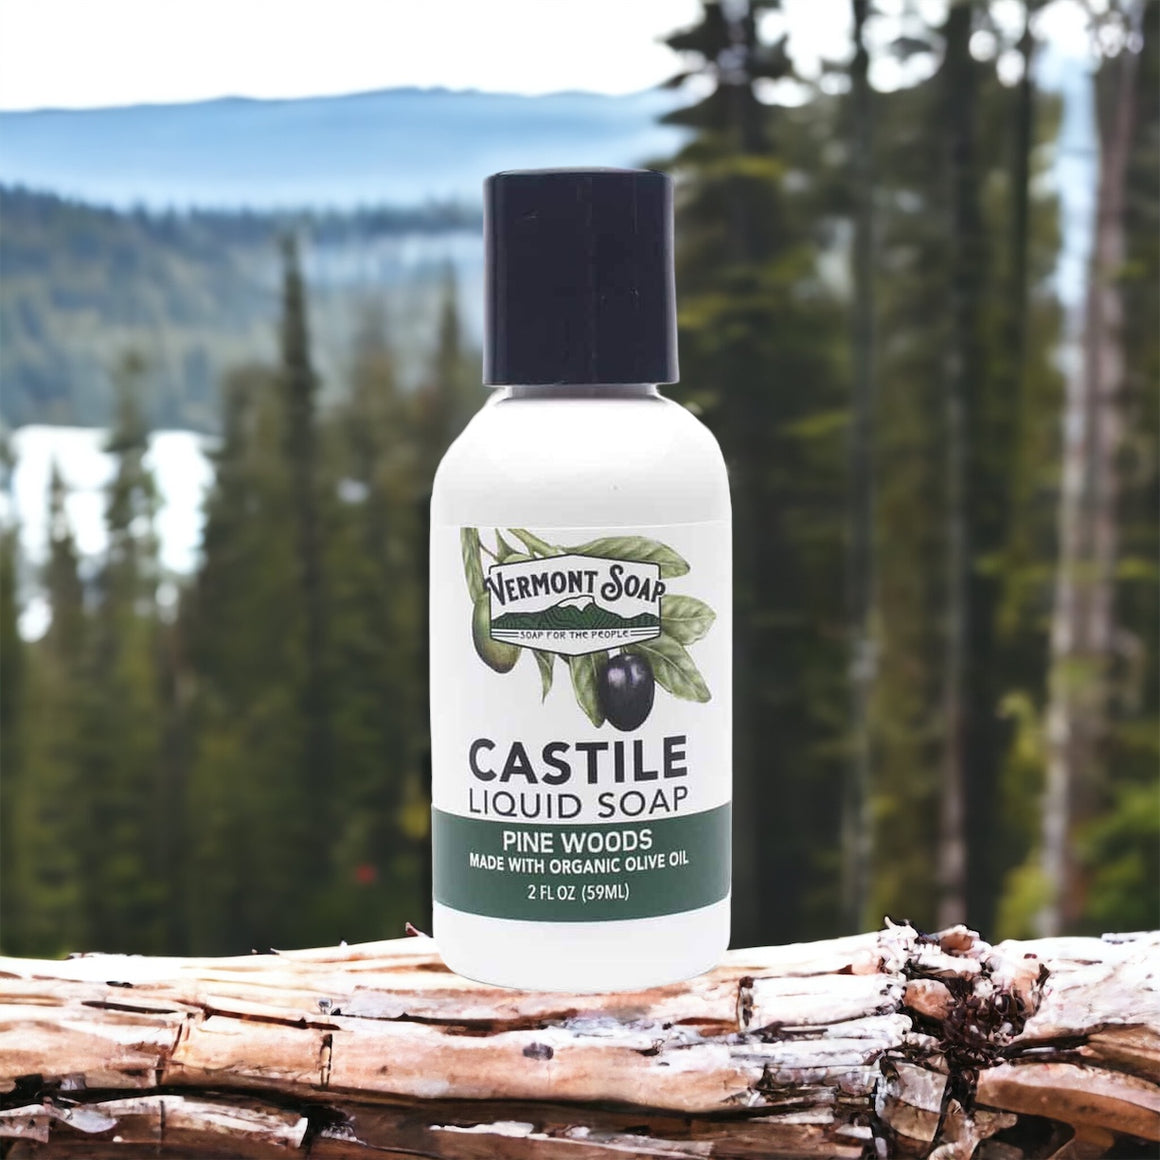 Pine Woods Castile Liquid Soap - Vermont Soap